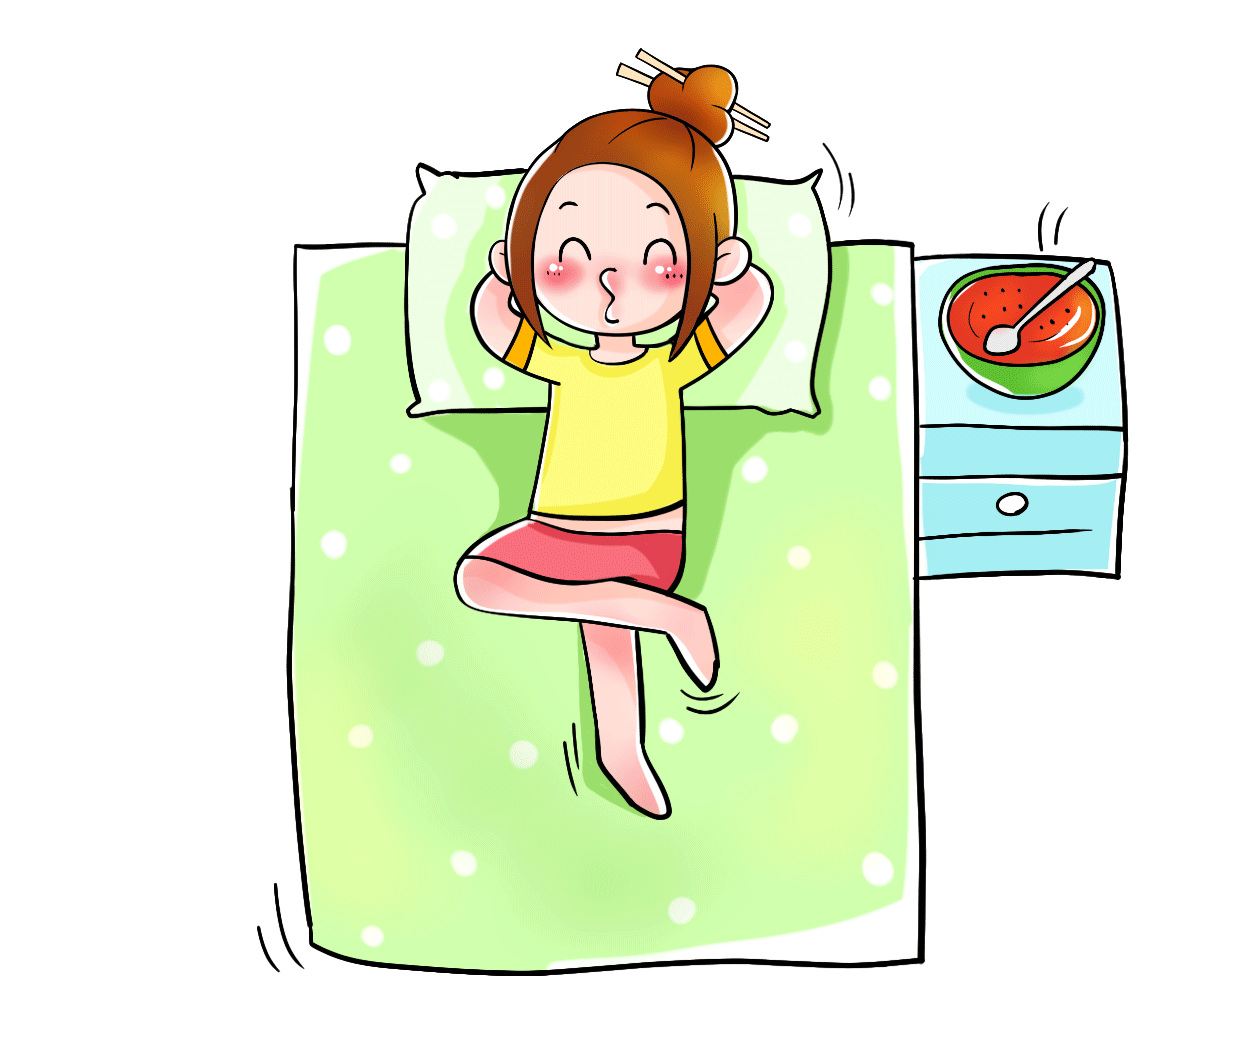 一 个 人 的 夏 日 午 后吃 完 半 个 冰 西 瓜 躺 在 床 上哼 着 小